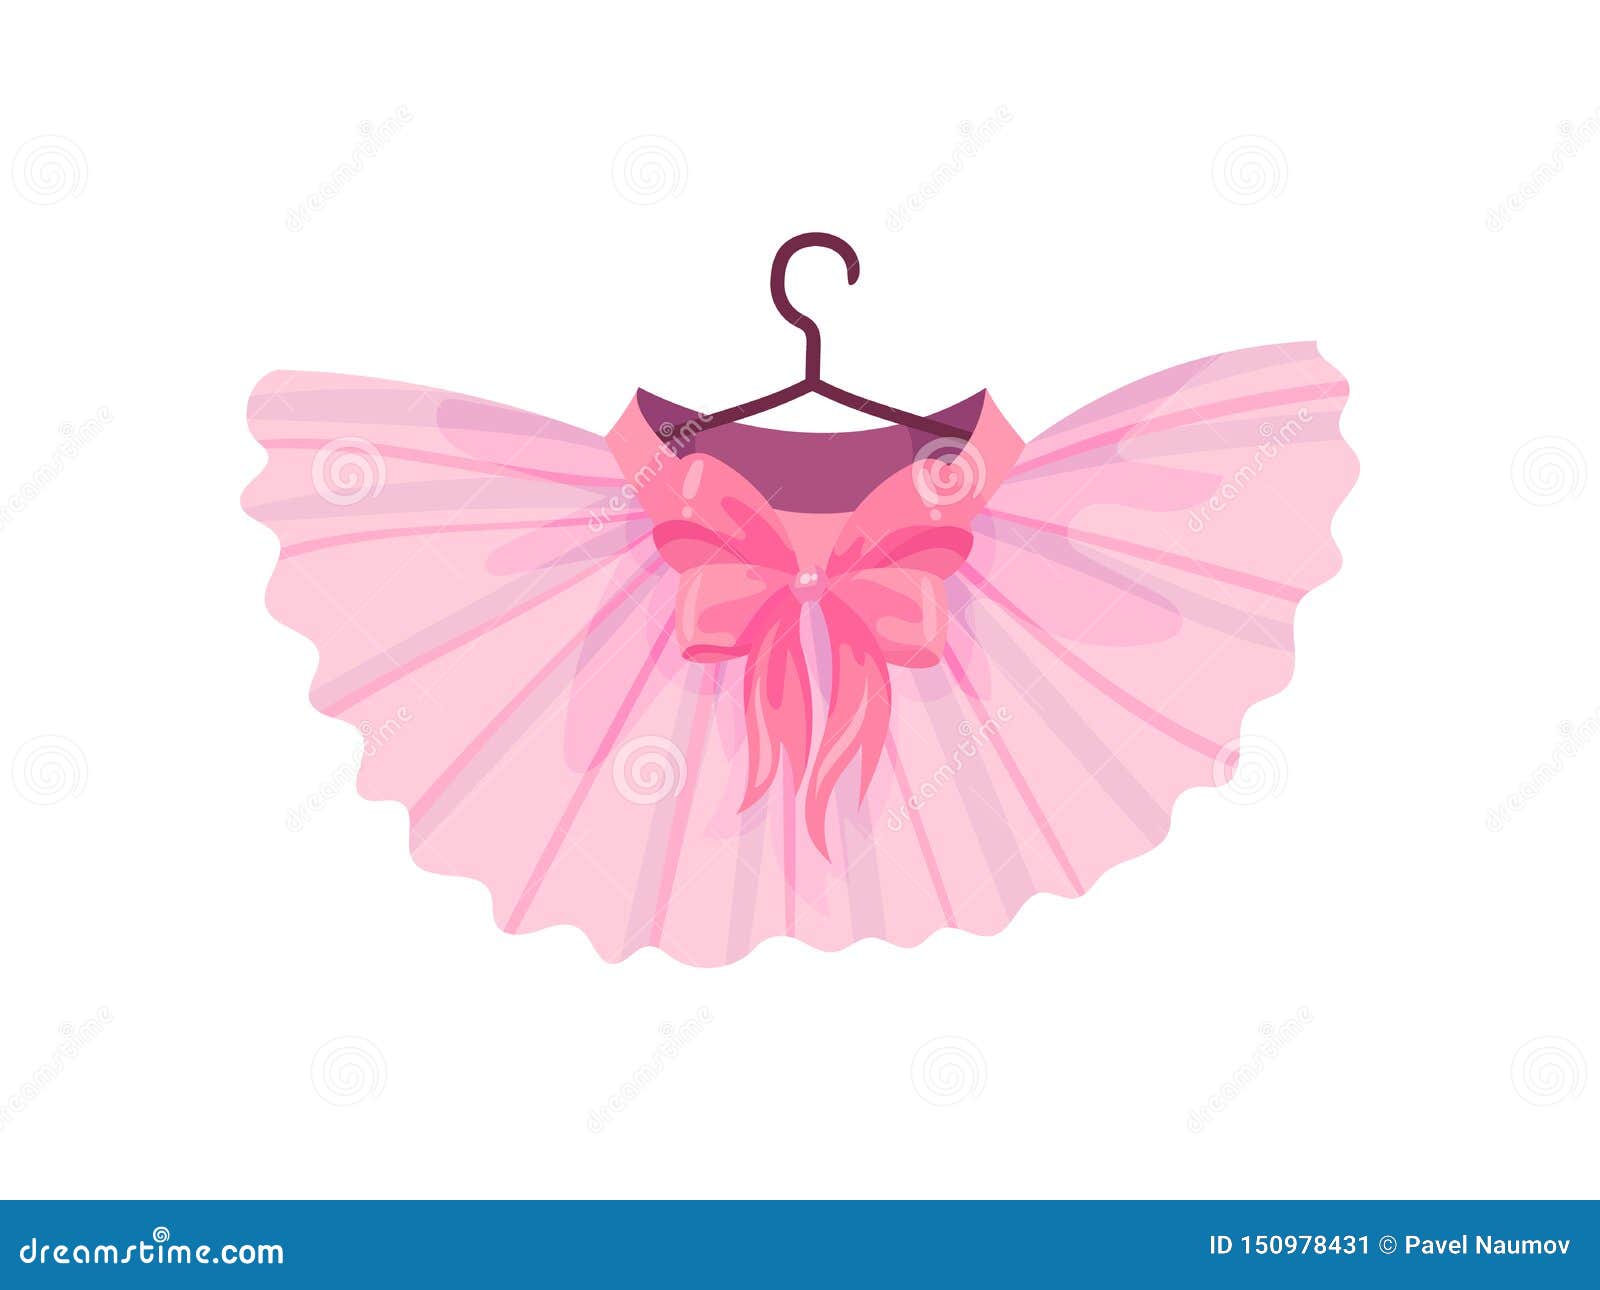 Premium AI Image  Pink tutu hanging on a ballet barre